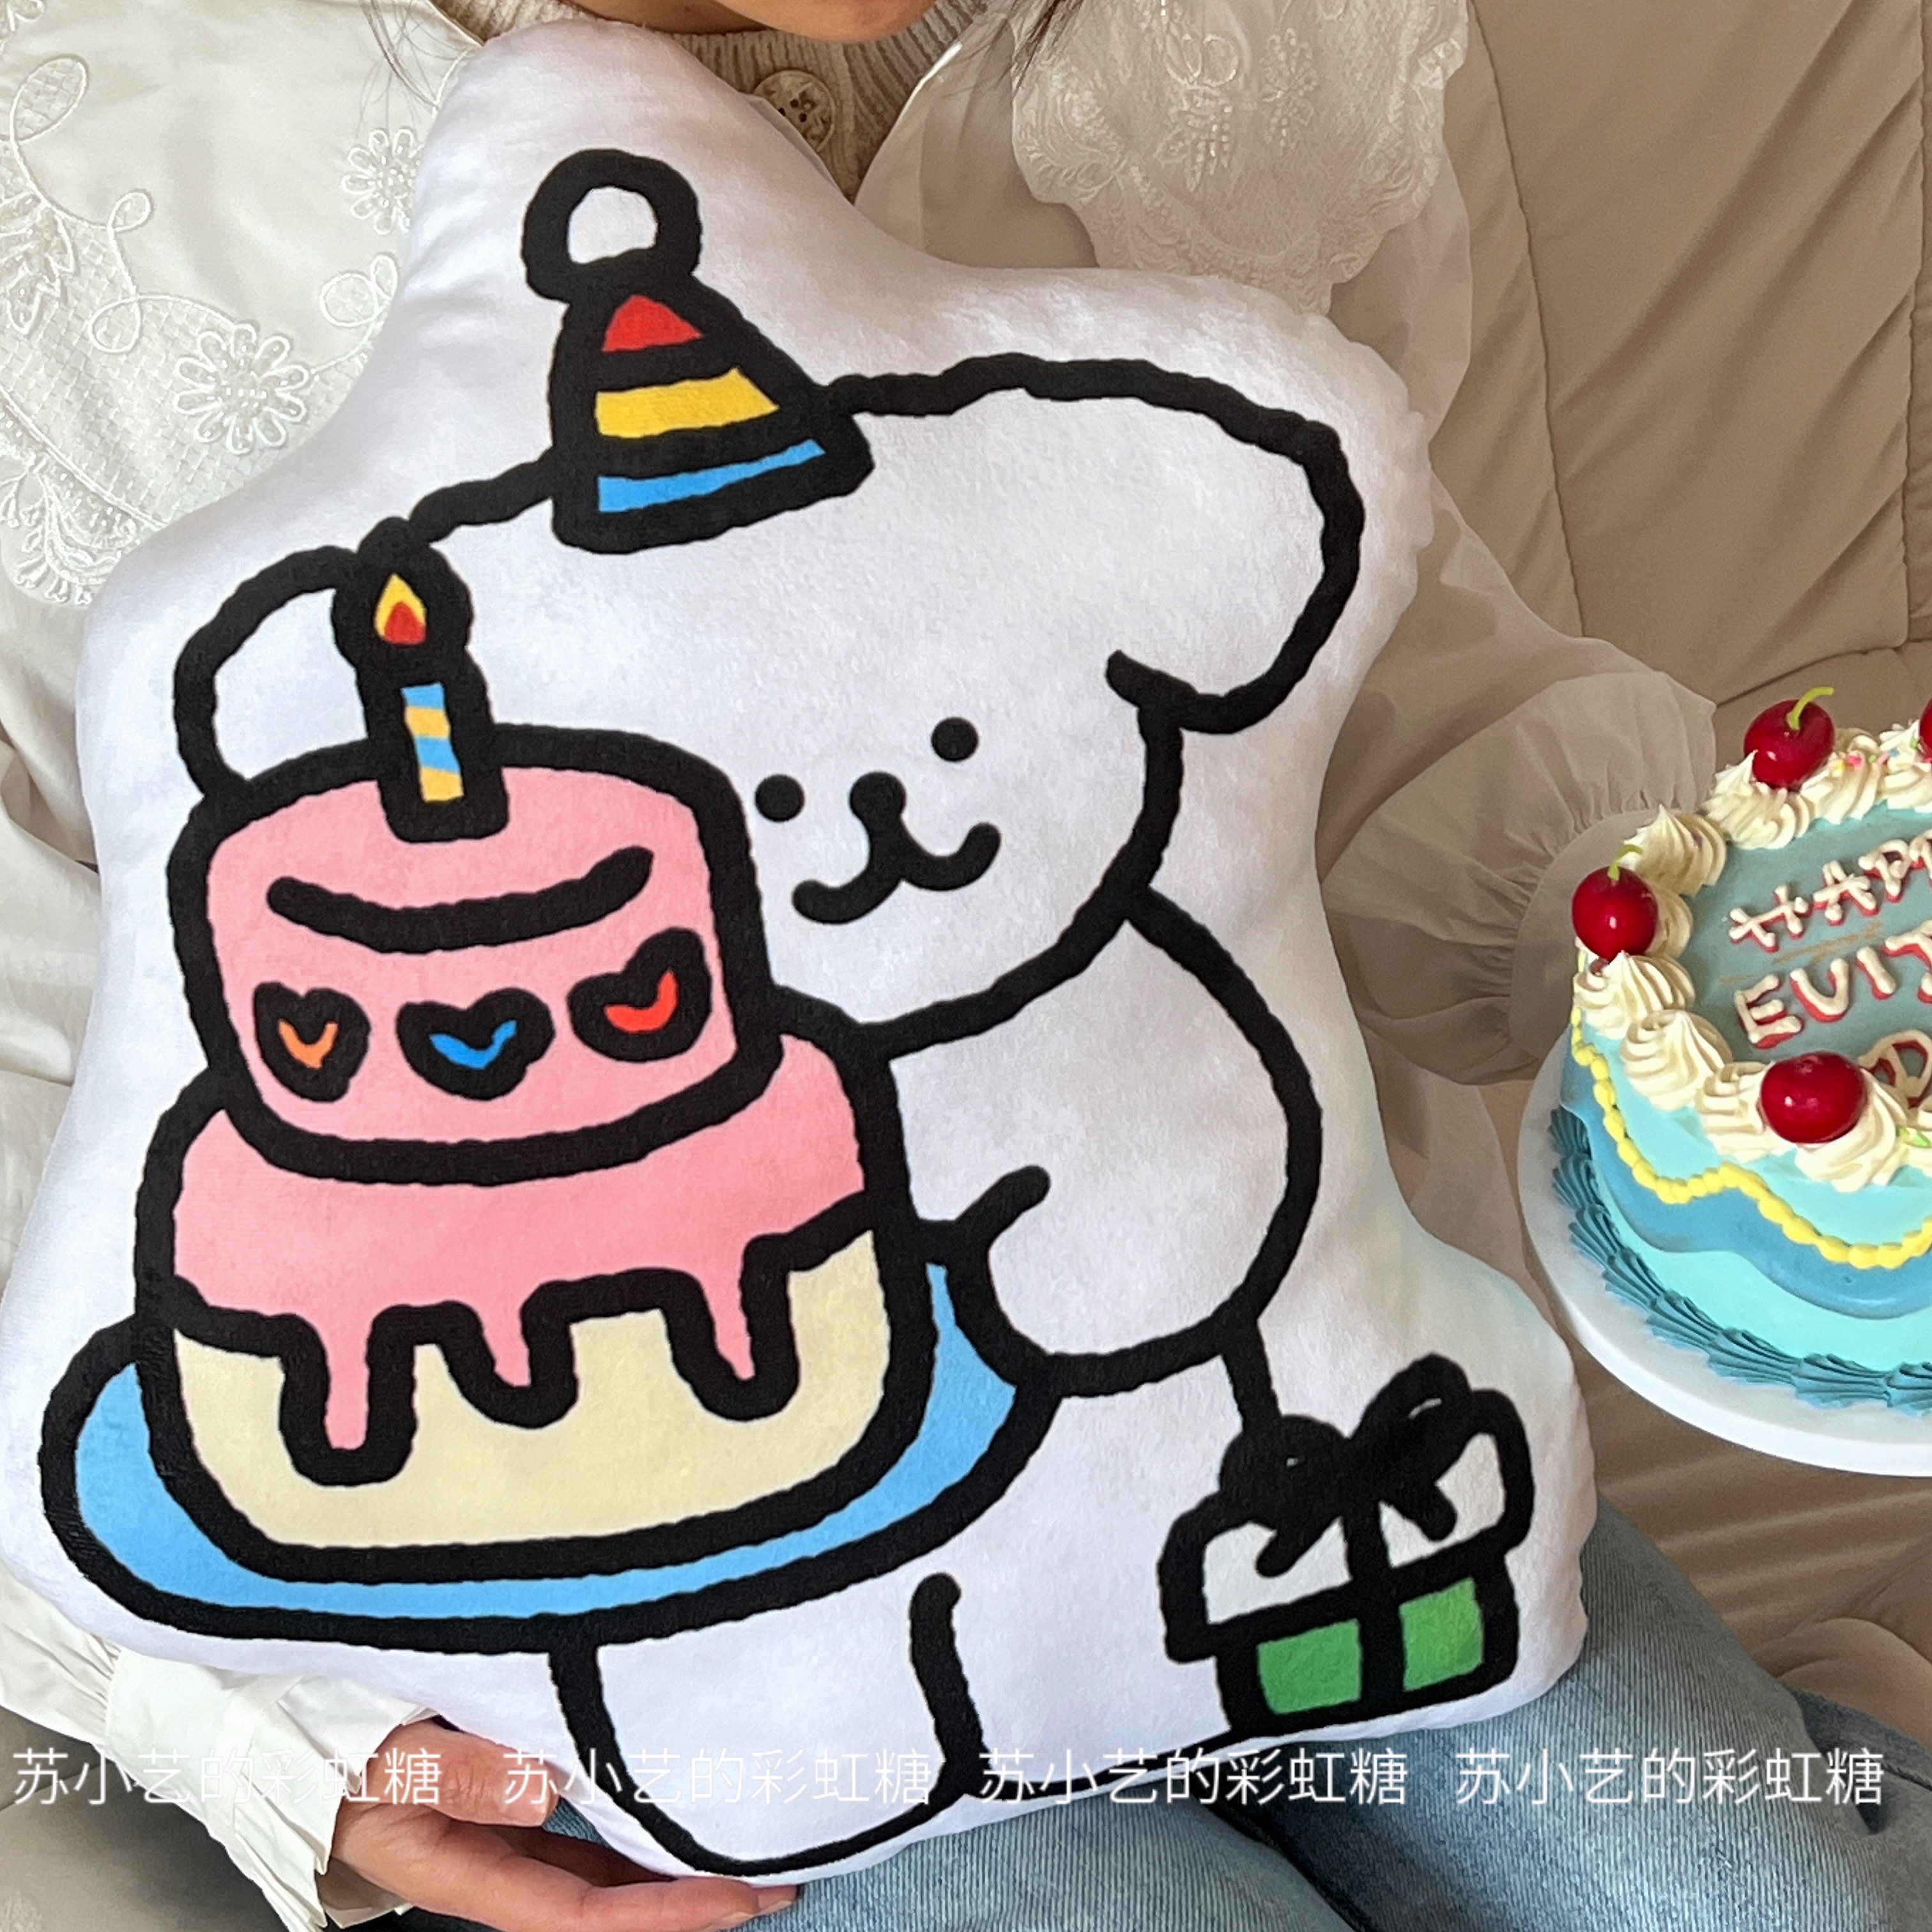 祝你生日快乐！原创小狗蛋糕抱枕沙发靠枕可爱卡通生日靠垫礼物